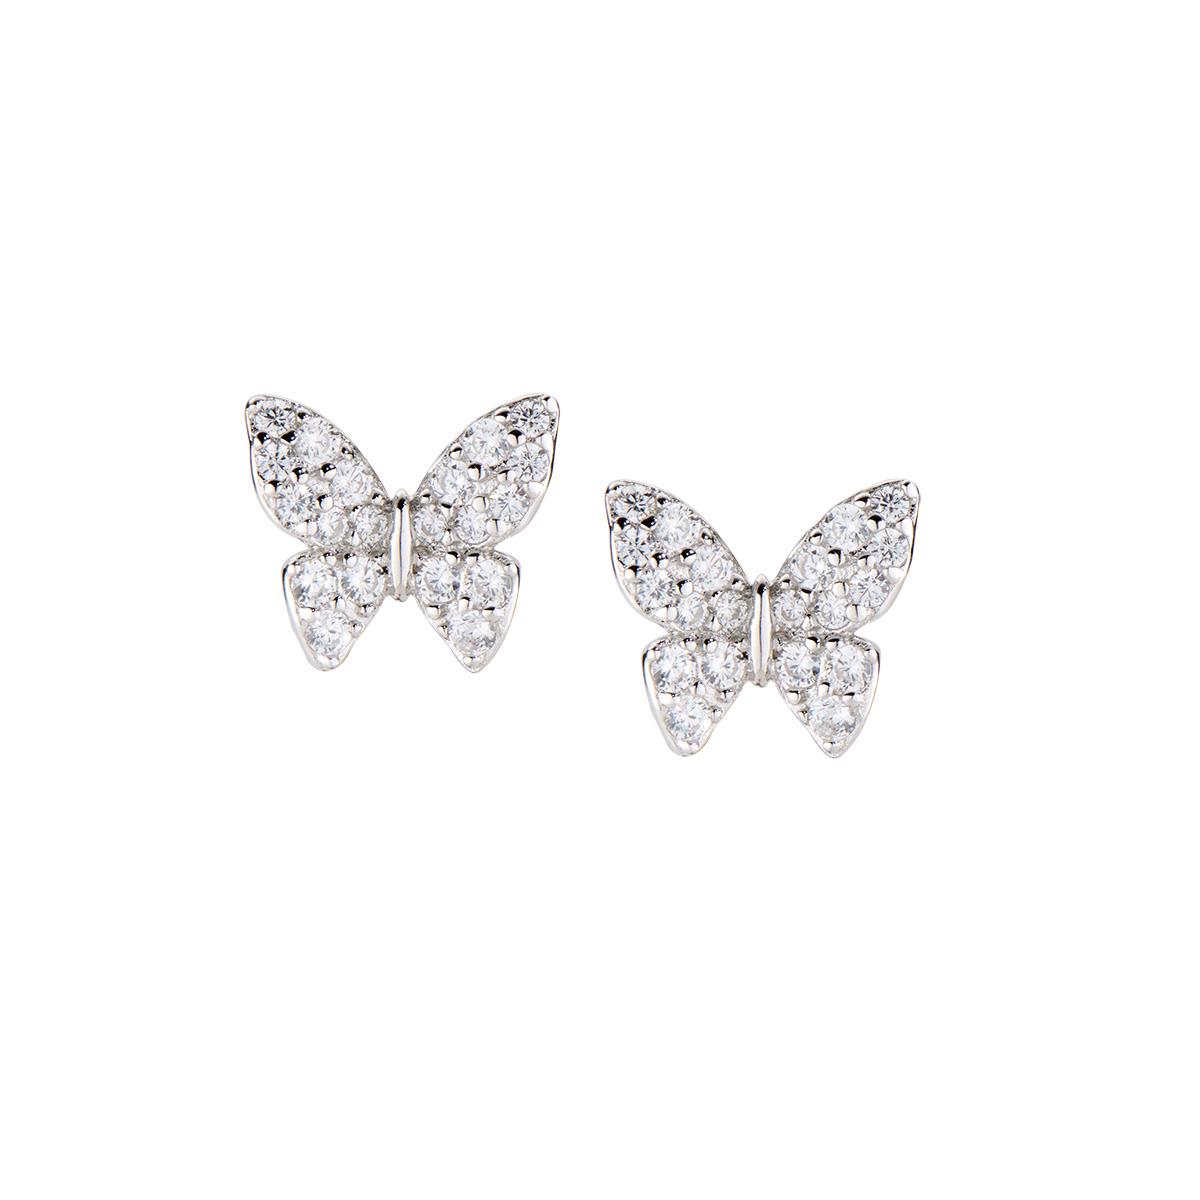 Orecchini Diamonds Farfalla Piccola con Zirconi - Amen Collection Ref. EFAPBBZ3 - AMEN